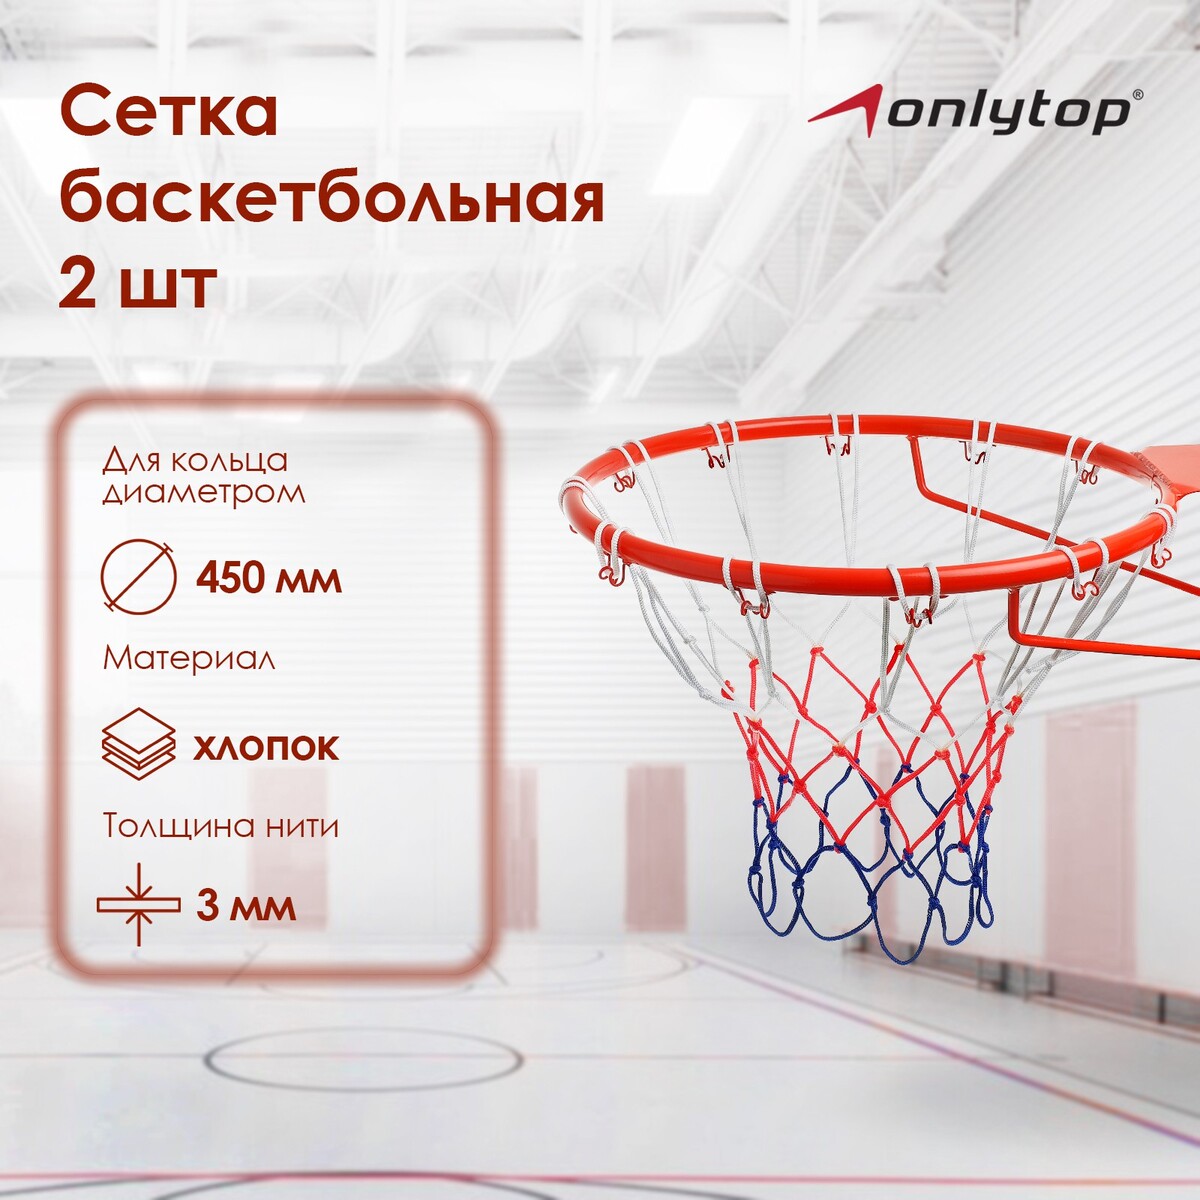 Сетка баскетбольная onlytop, 50 см, нить 3 мм, 2 шт. сетка баскетбольная профессиональная 6мм гимнаст 2 14